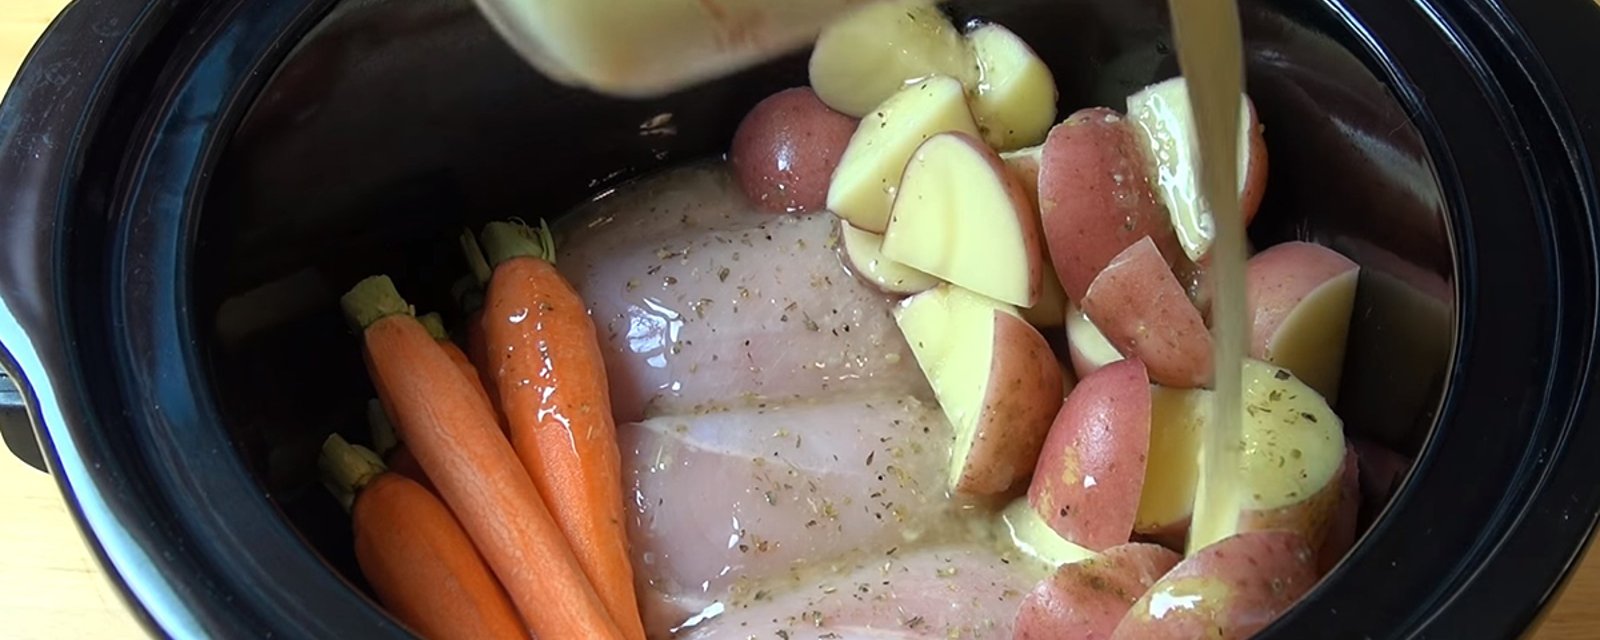 Poulet, pommes de terre et carottes à la mijoteuse, je vous garanti que chaque bouchée est délicieuse